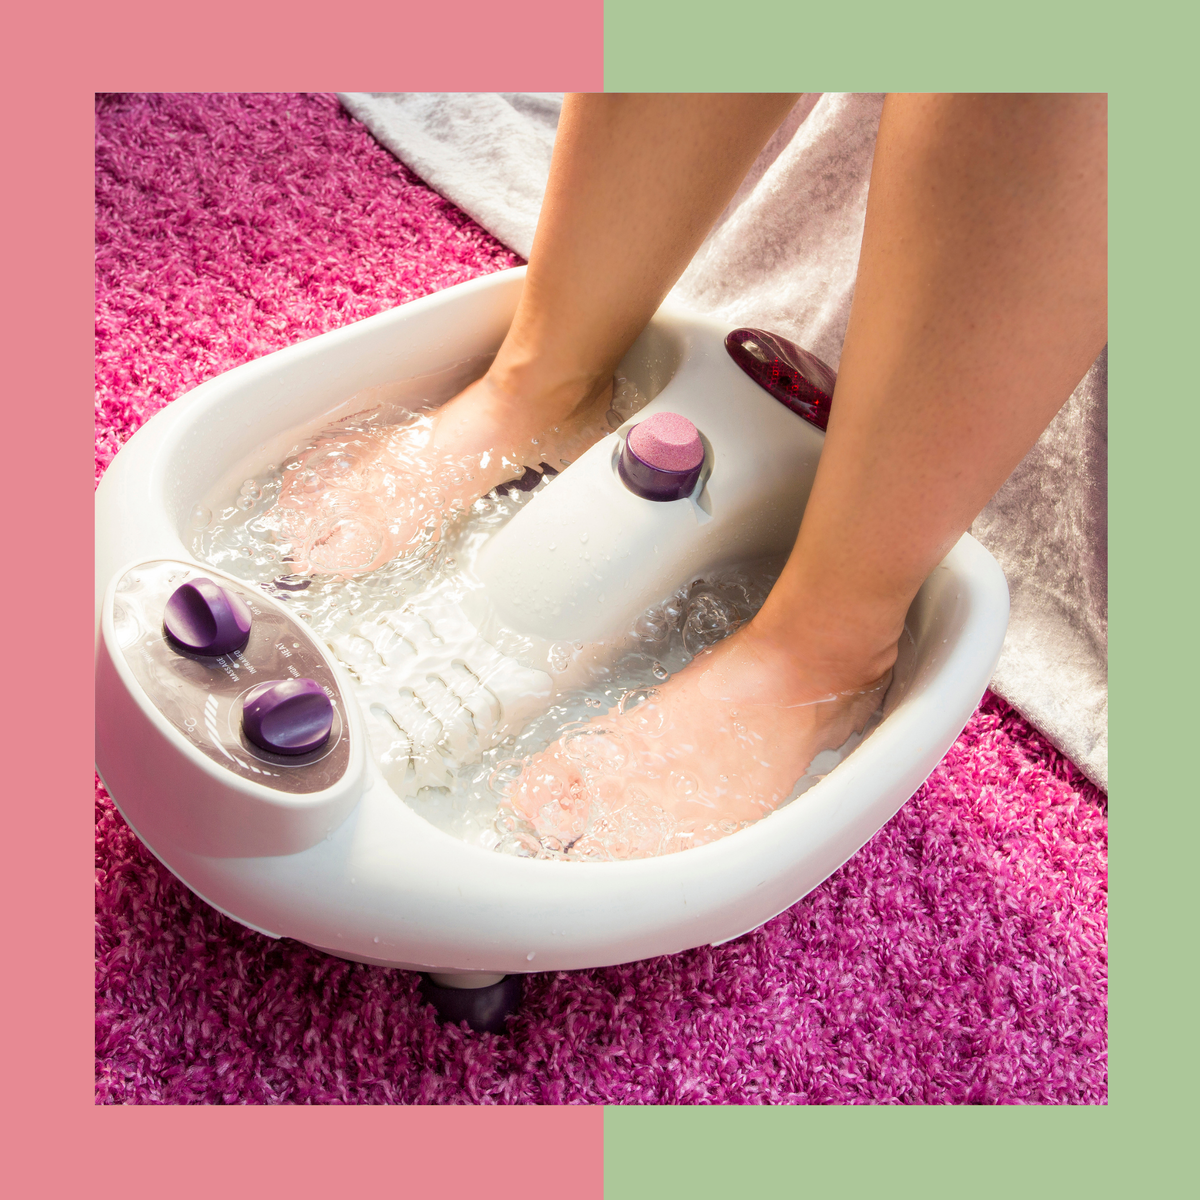 Гидромассаж ног купить. Гидромассажная ванночка Nozomi MF-104. Гидромассаж ног 5016. BABYLISS body benefits гидромассажная ванночка. Педикюрная ванна для ног.